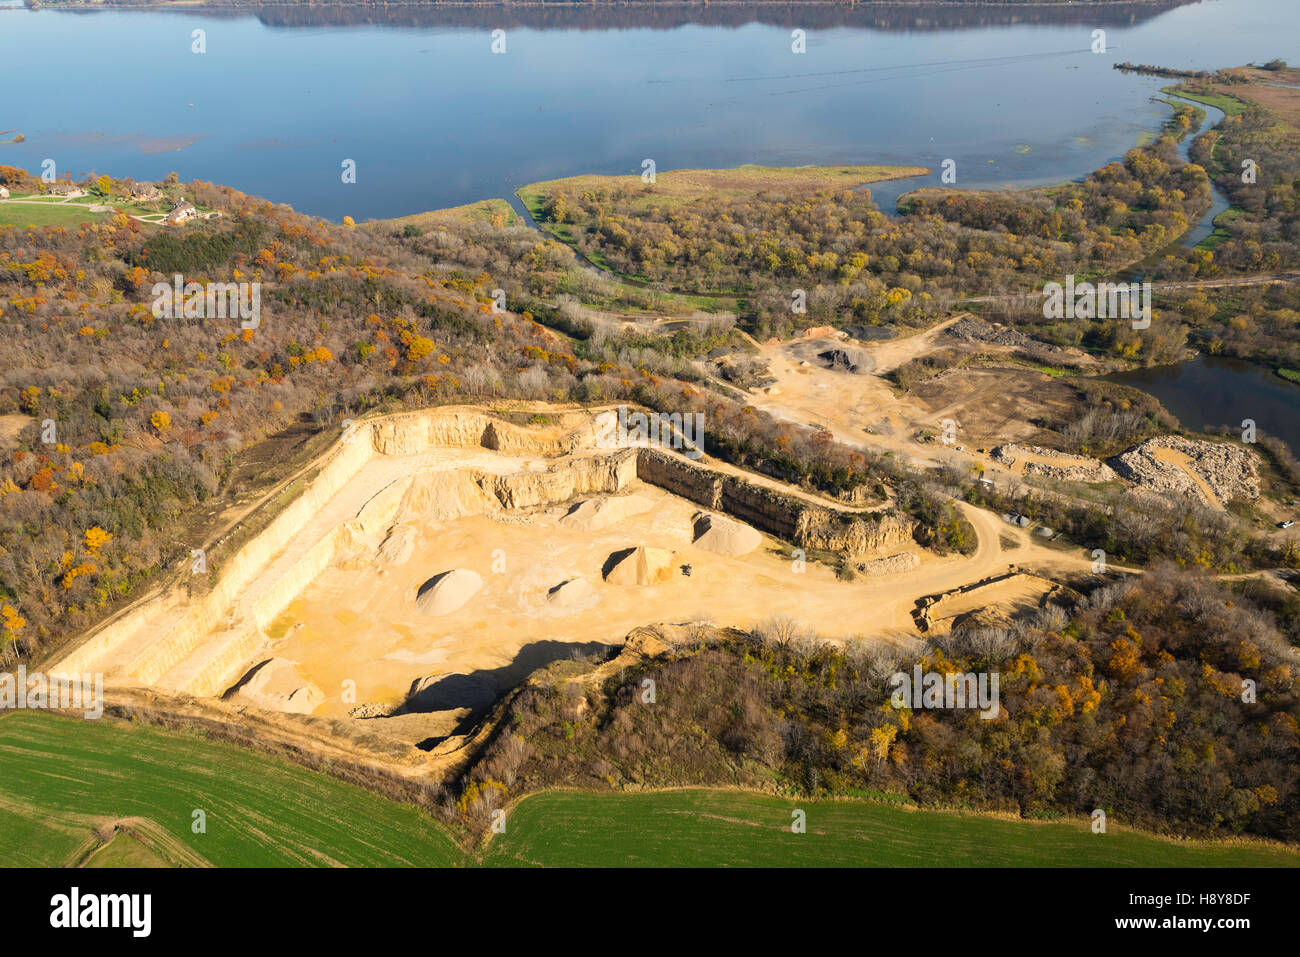 Vista aerea di una cava di calcare lungo il fiume Mississippi a nord di Dubuque, Iowa. Foto Stock